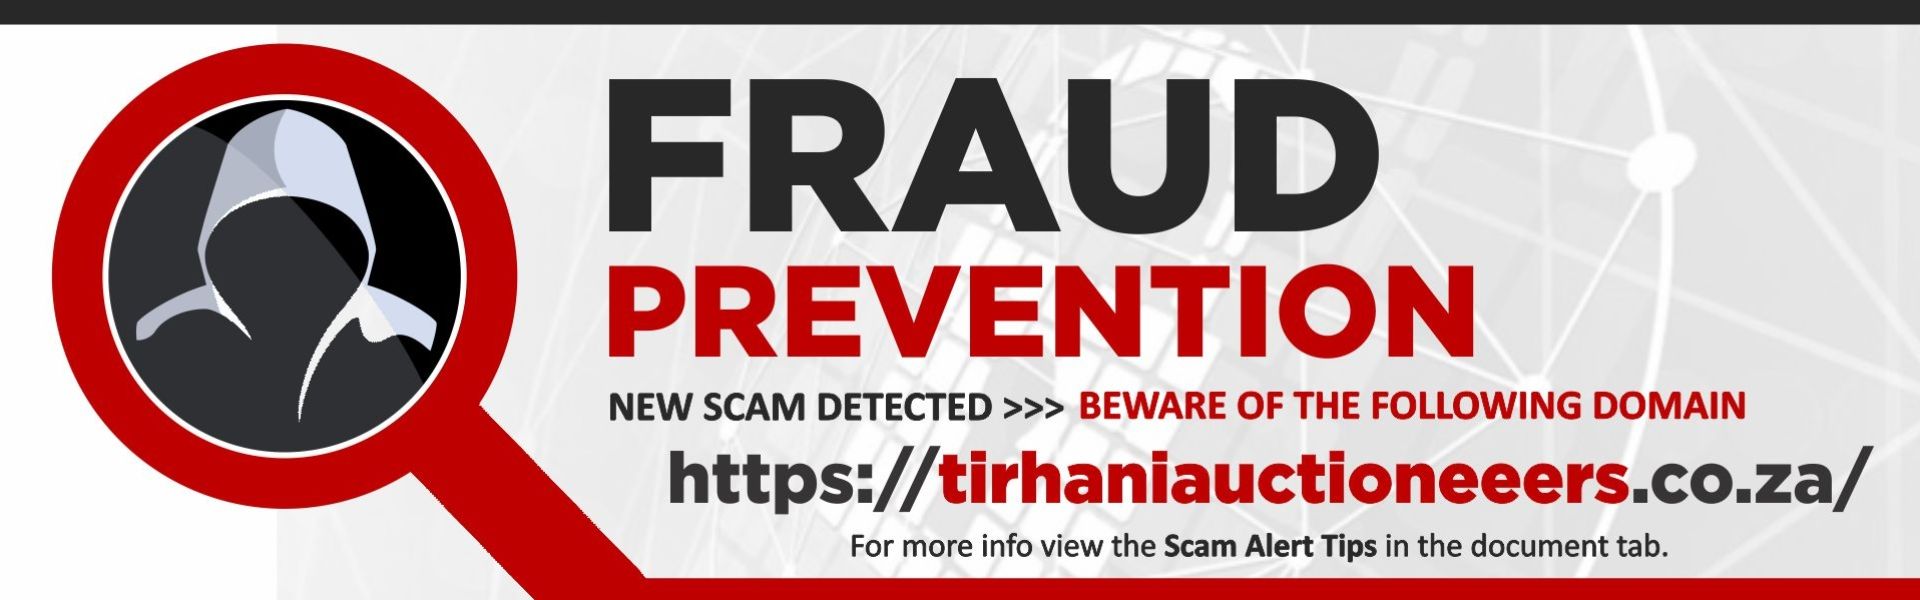 Fraud homepage